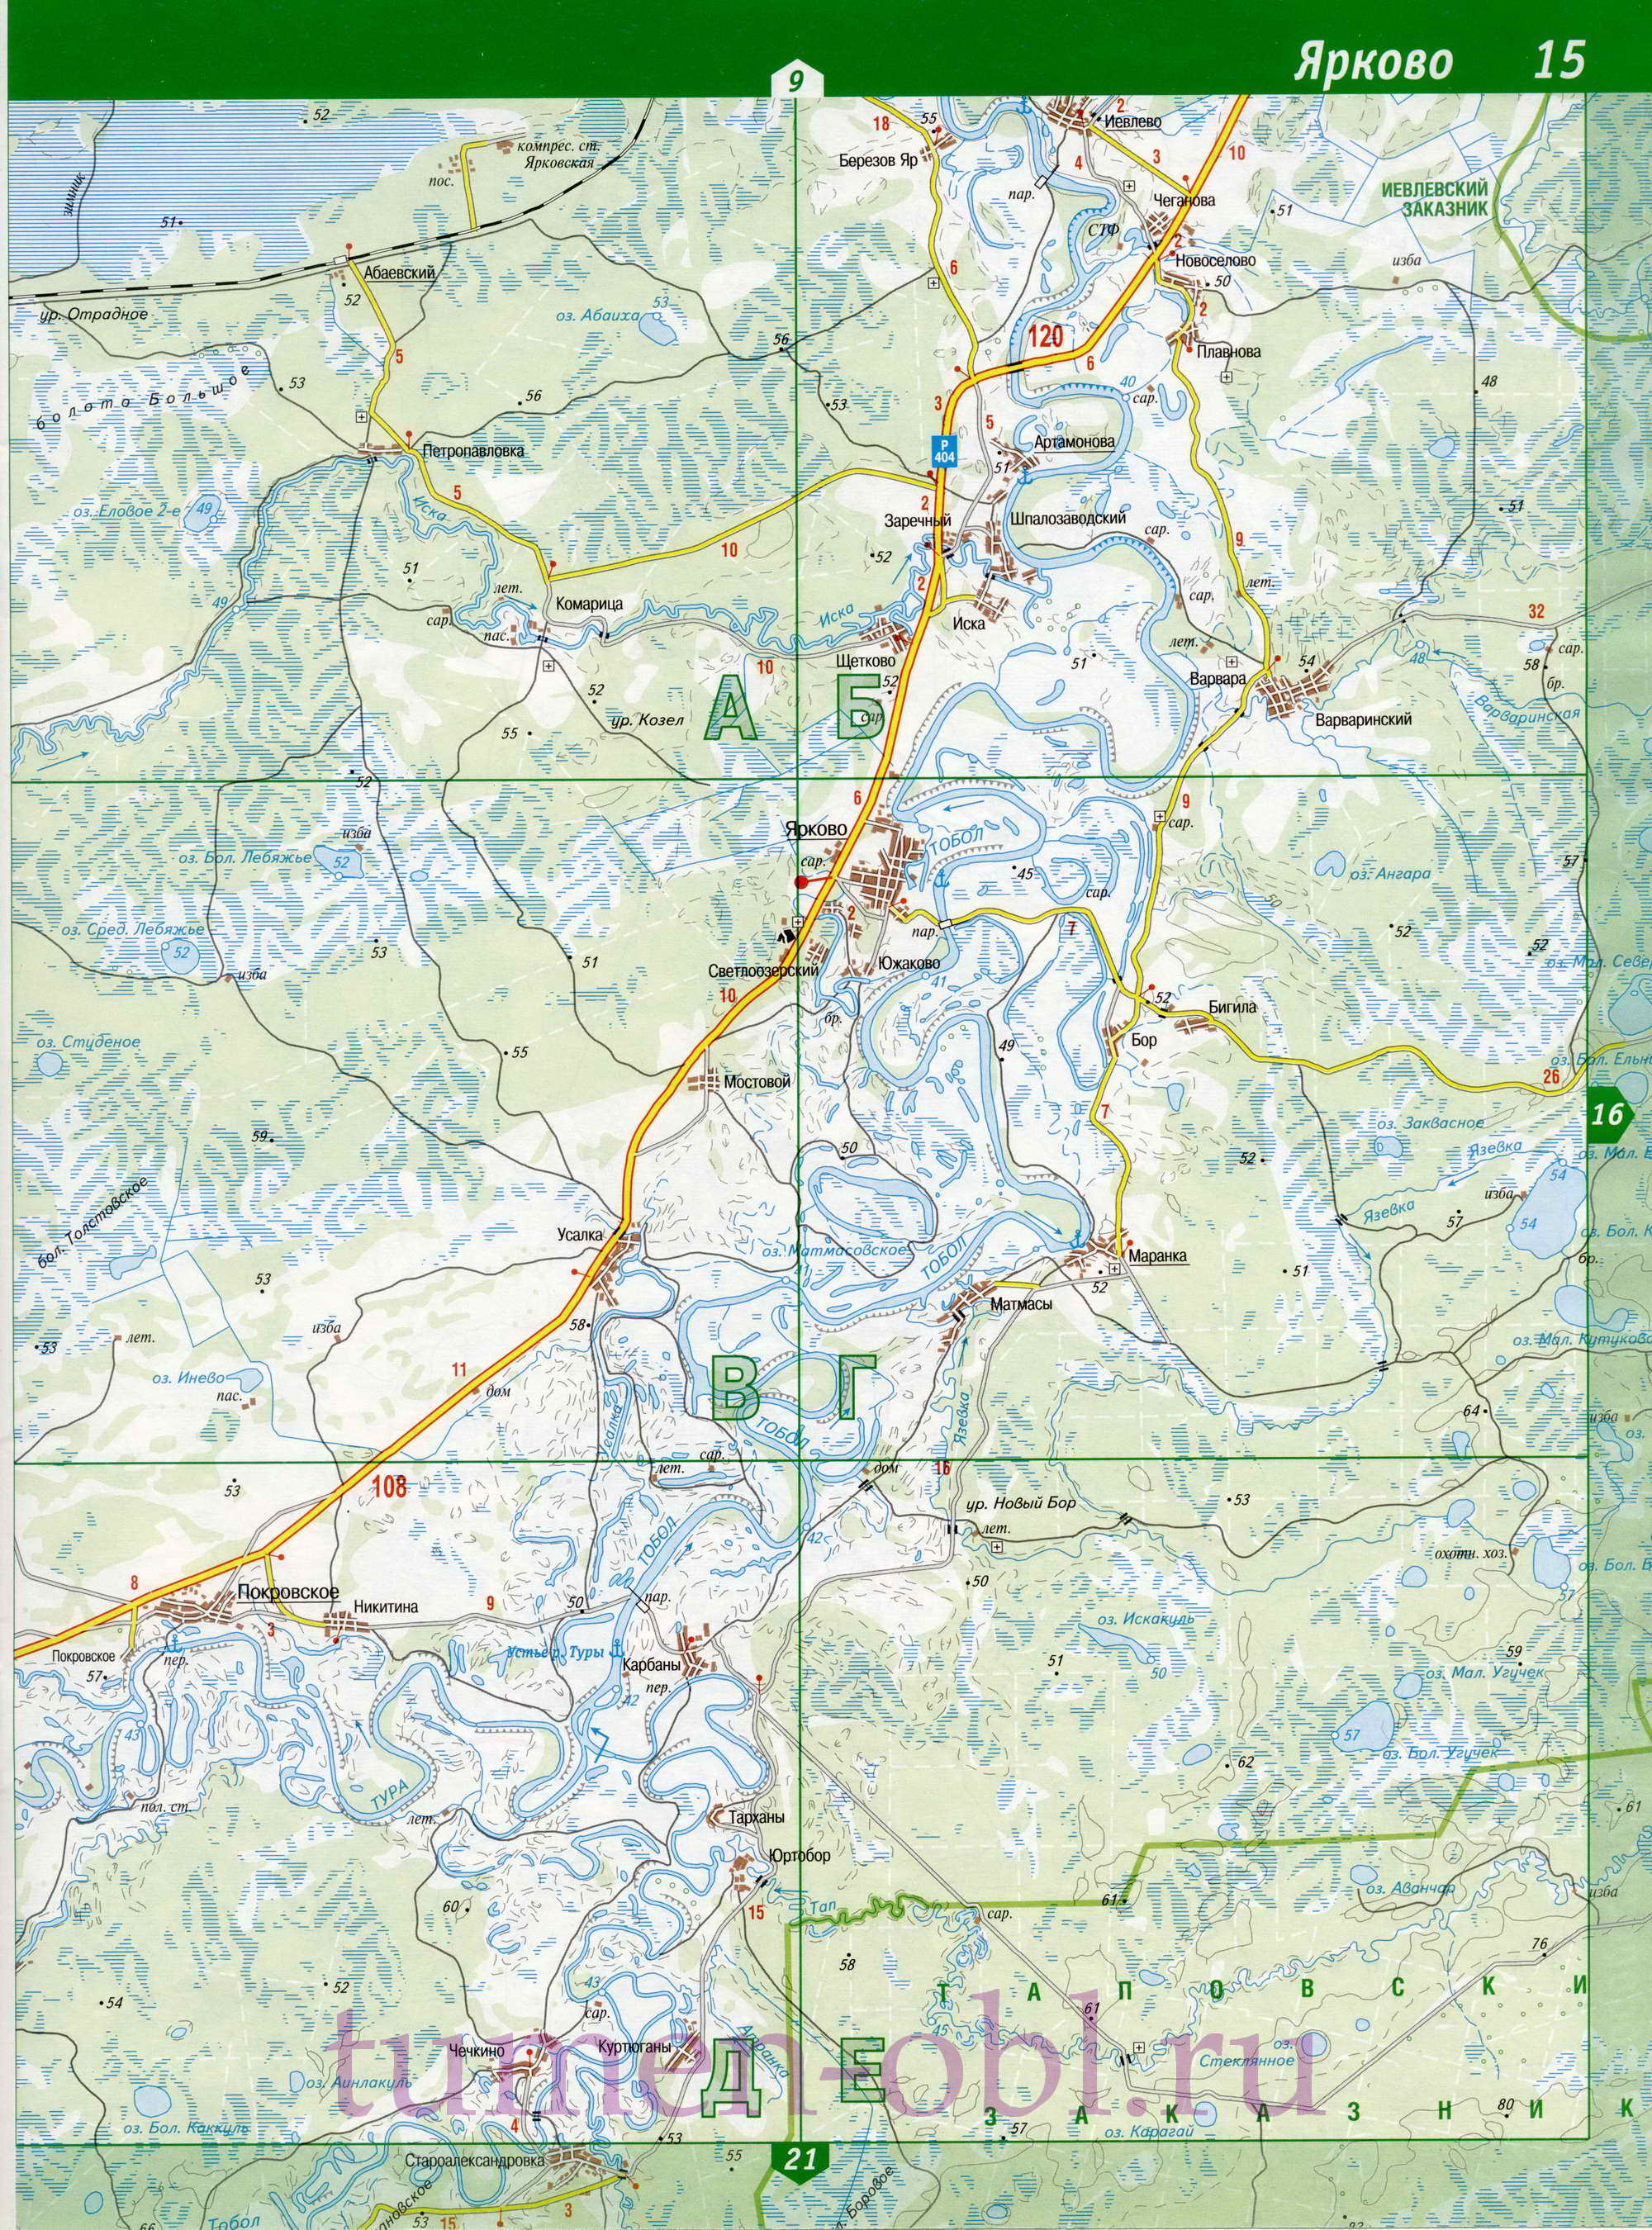 Карта Тюменской области топографическая. Подробная топографическая карта Тюменской области масштаба 1см:2км, D0 - 